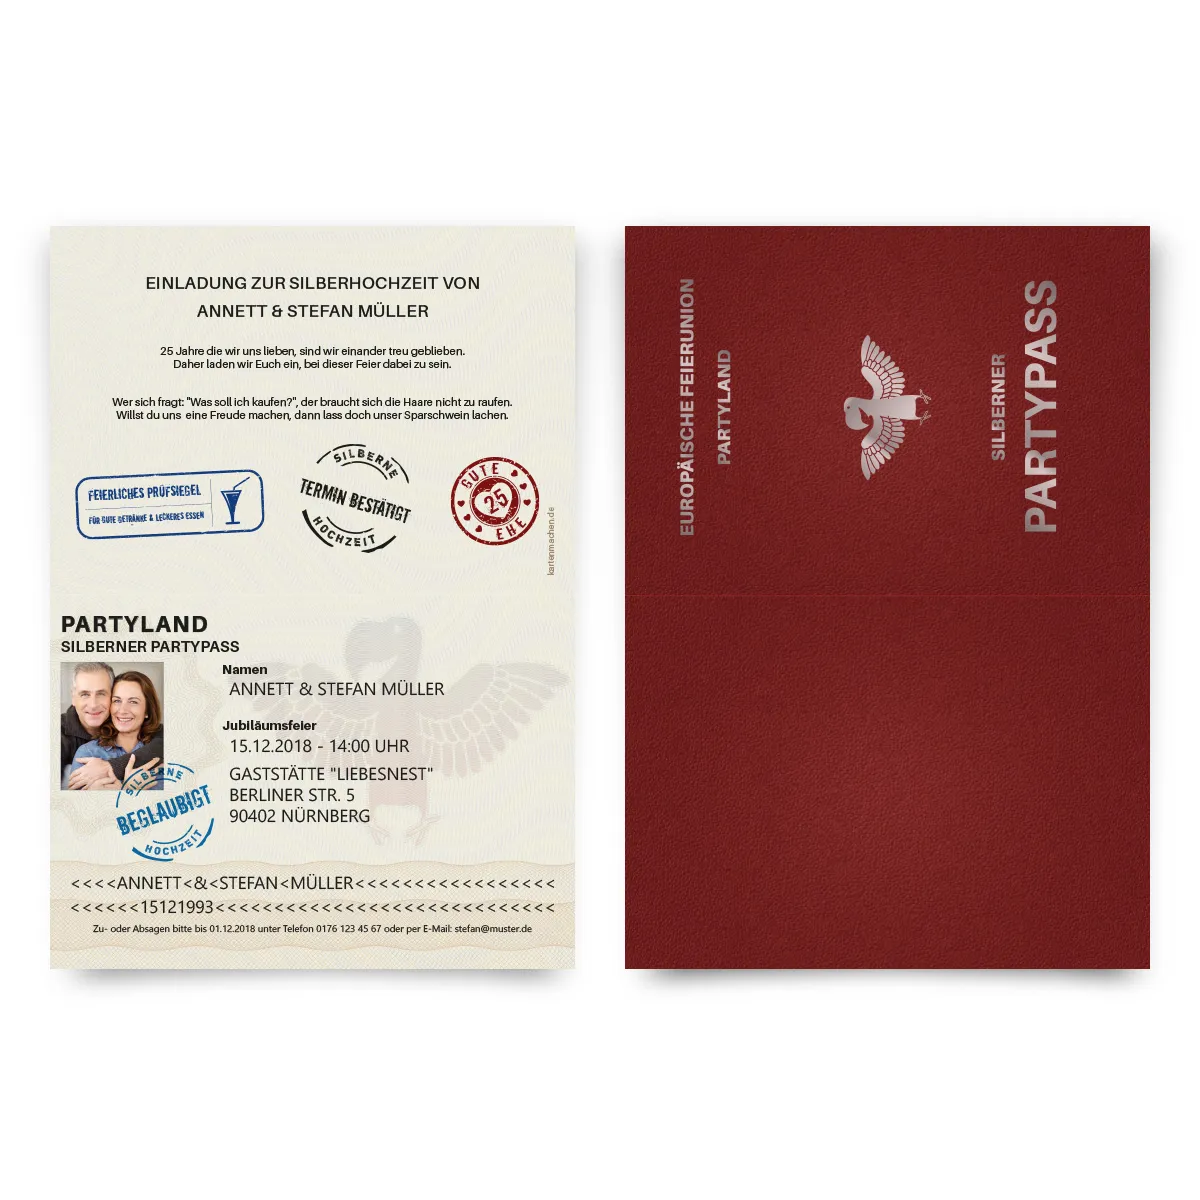 Einladungskarten zur Silberhochzeit - Reisepass